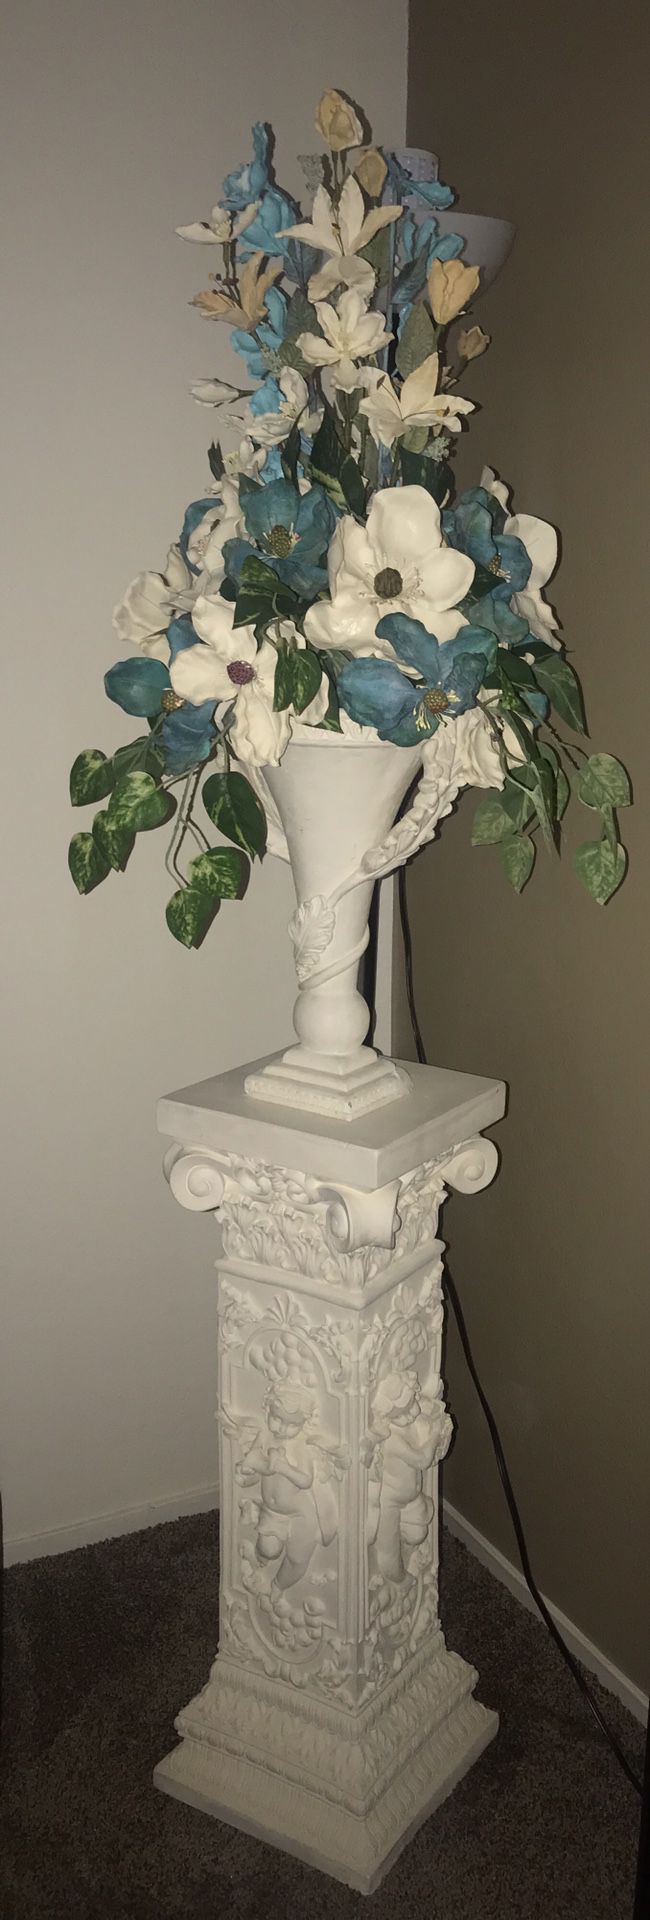 Flower vase with pillar stand